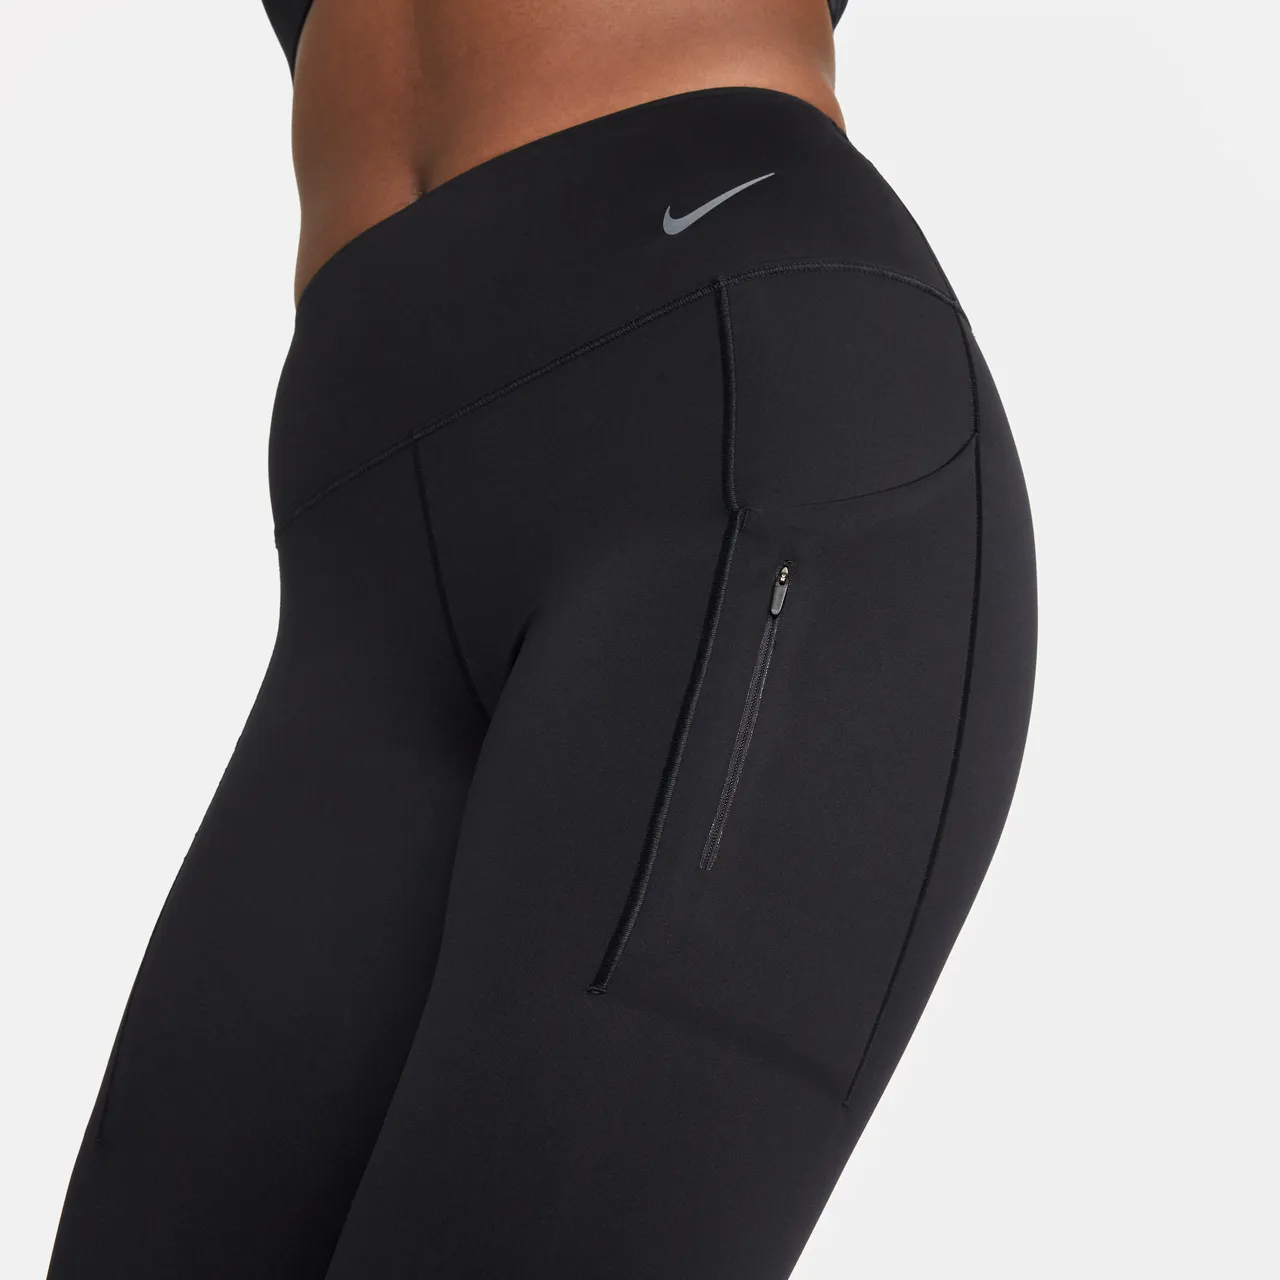 Nike Go Leggings in voller Länge mit starkem Halt, mittelhohem Bund und Taschen für Damen - Schwarz